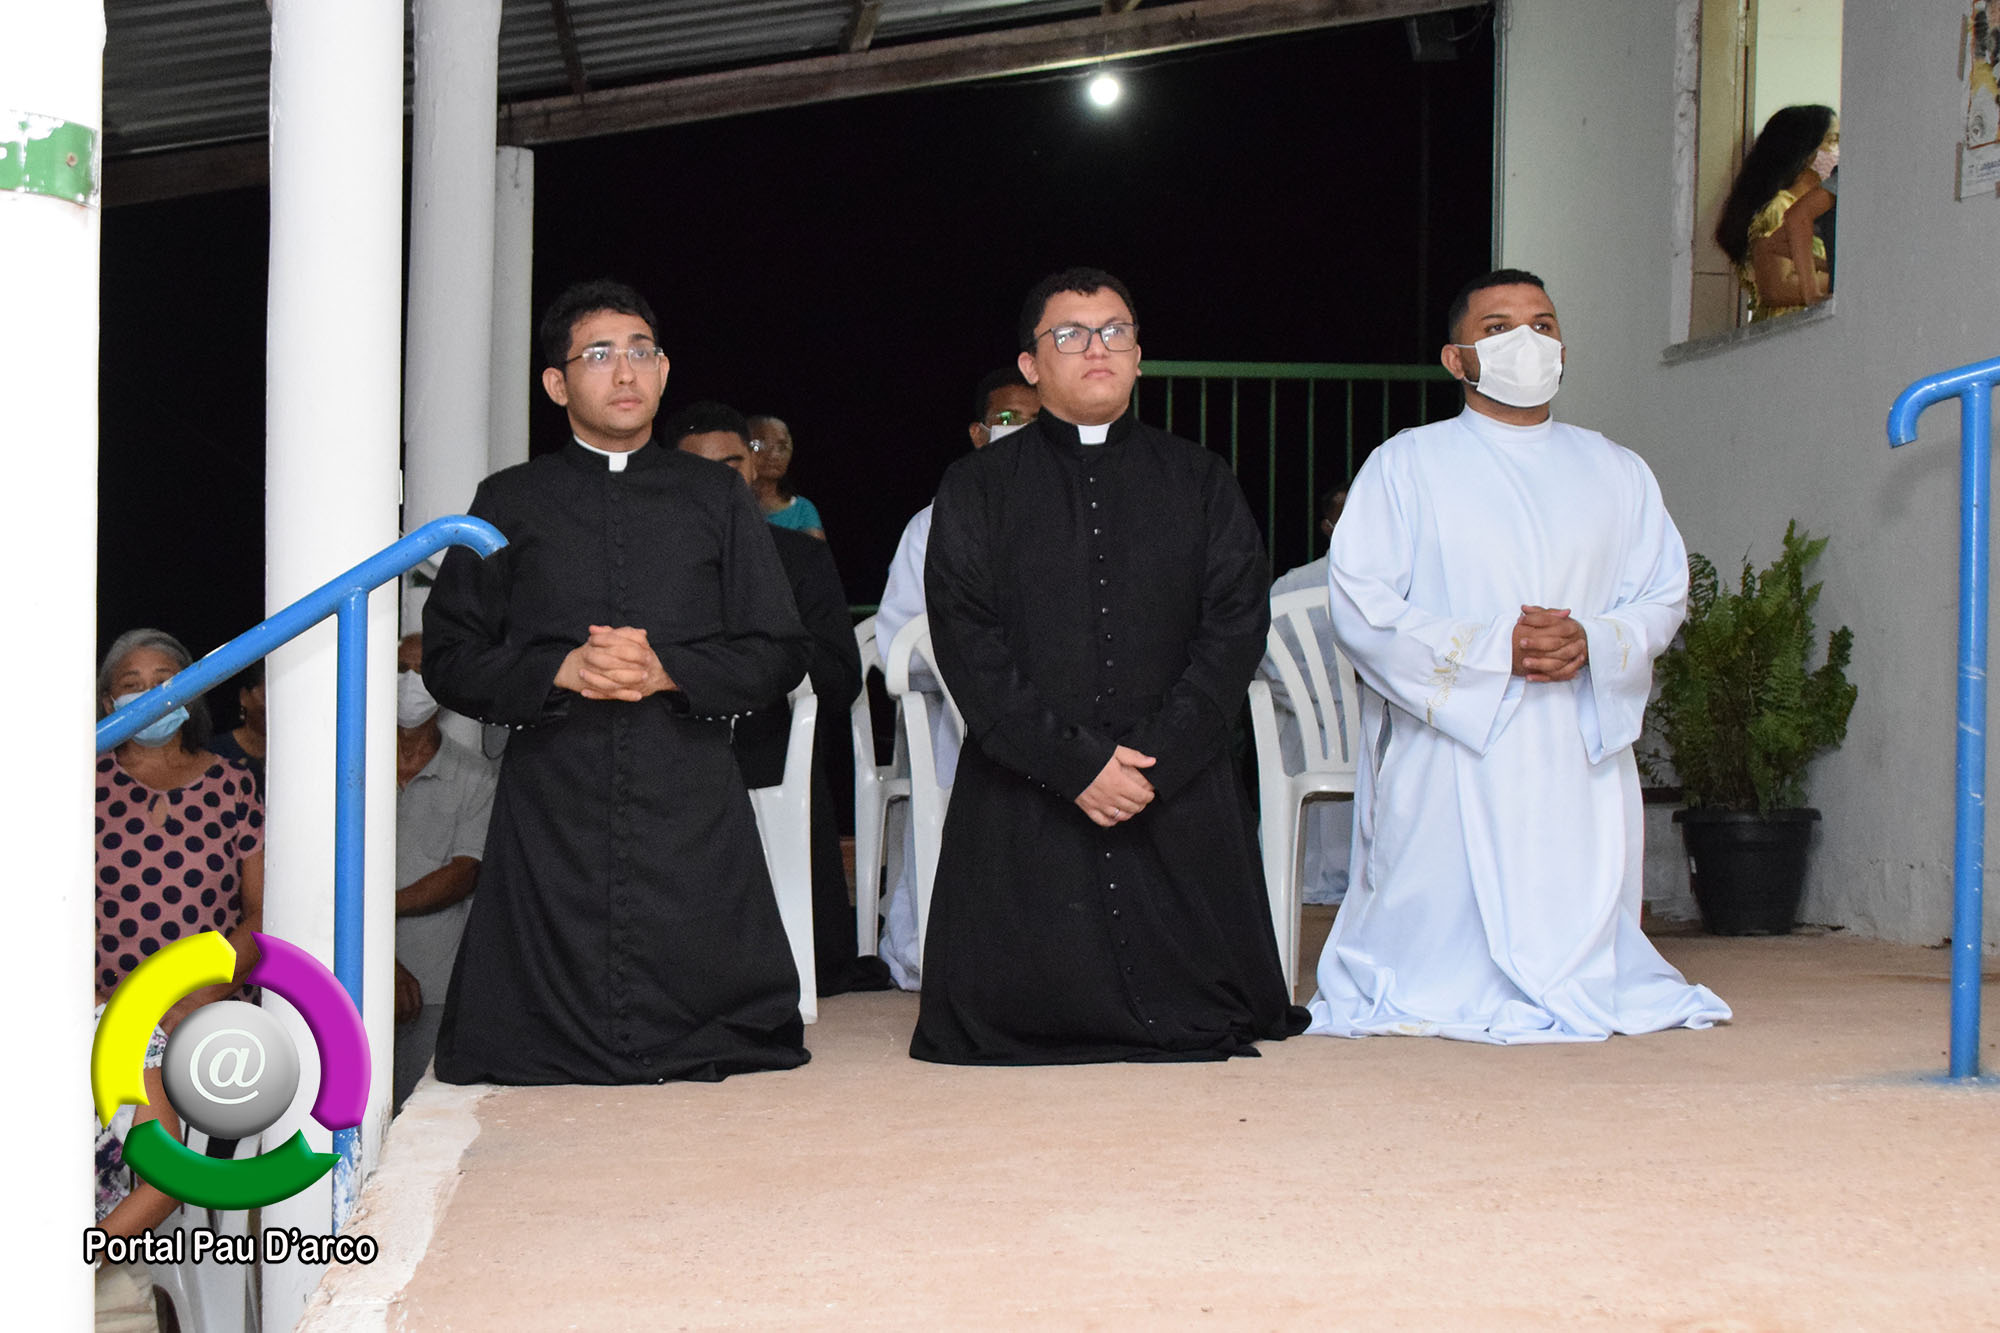 Início o Tríduo em honra a Nossa Senhora da Conceição em Pau D’arco do Piauí